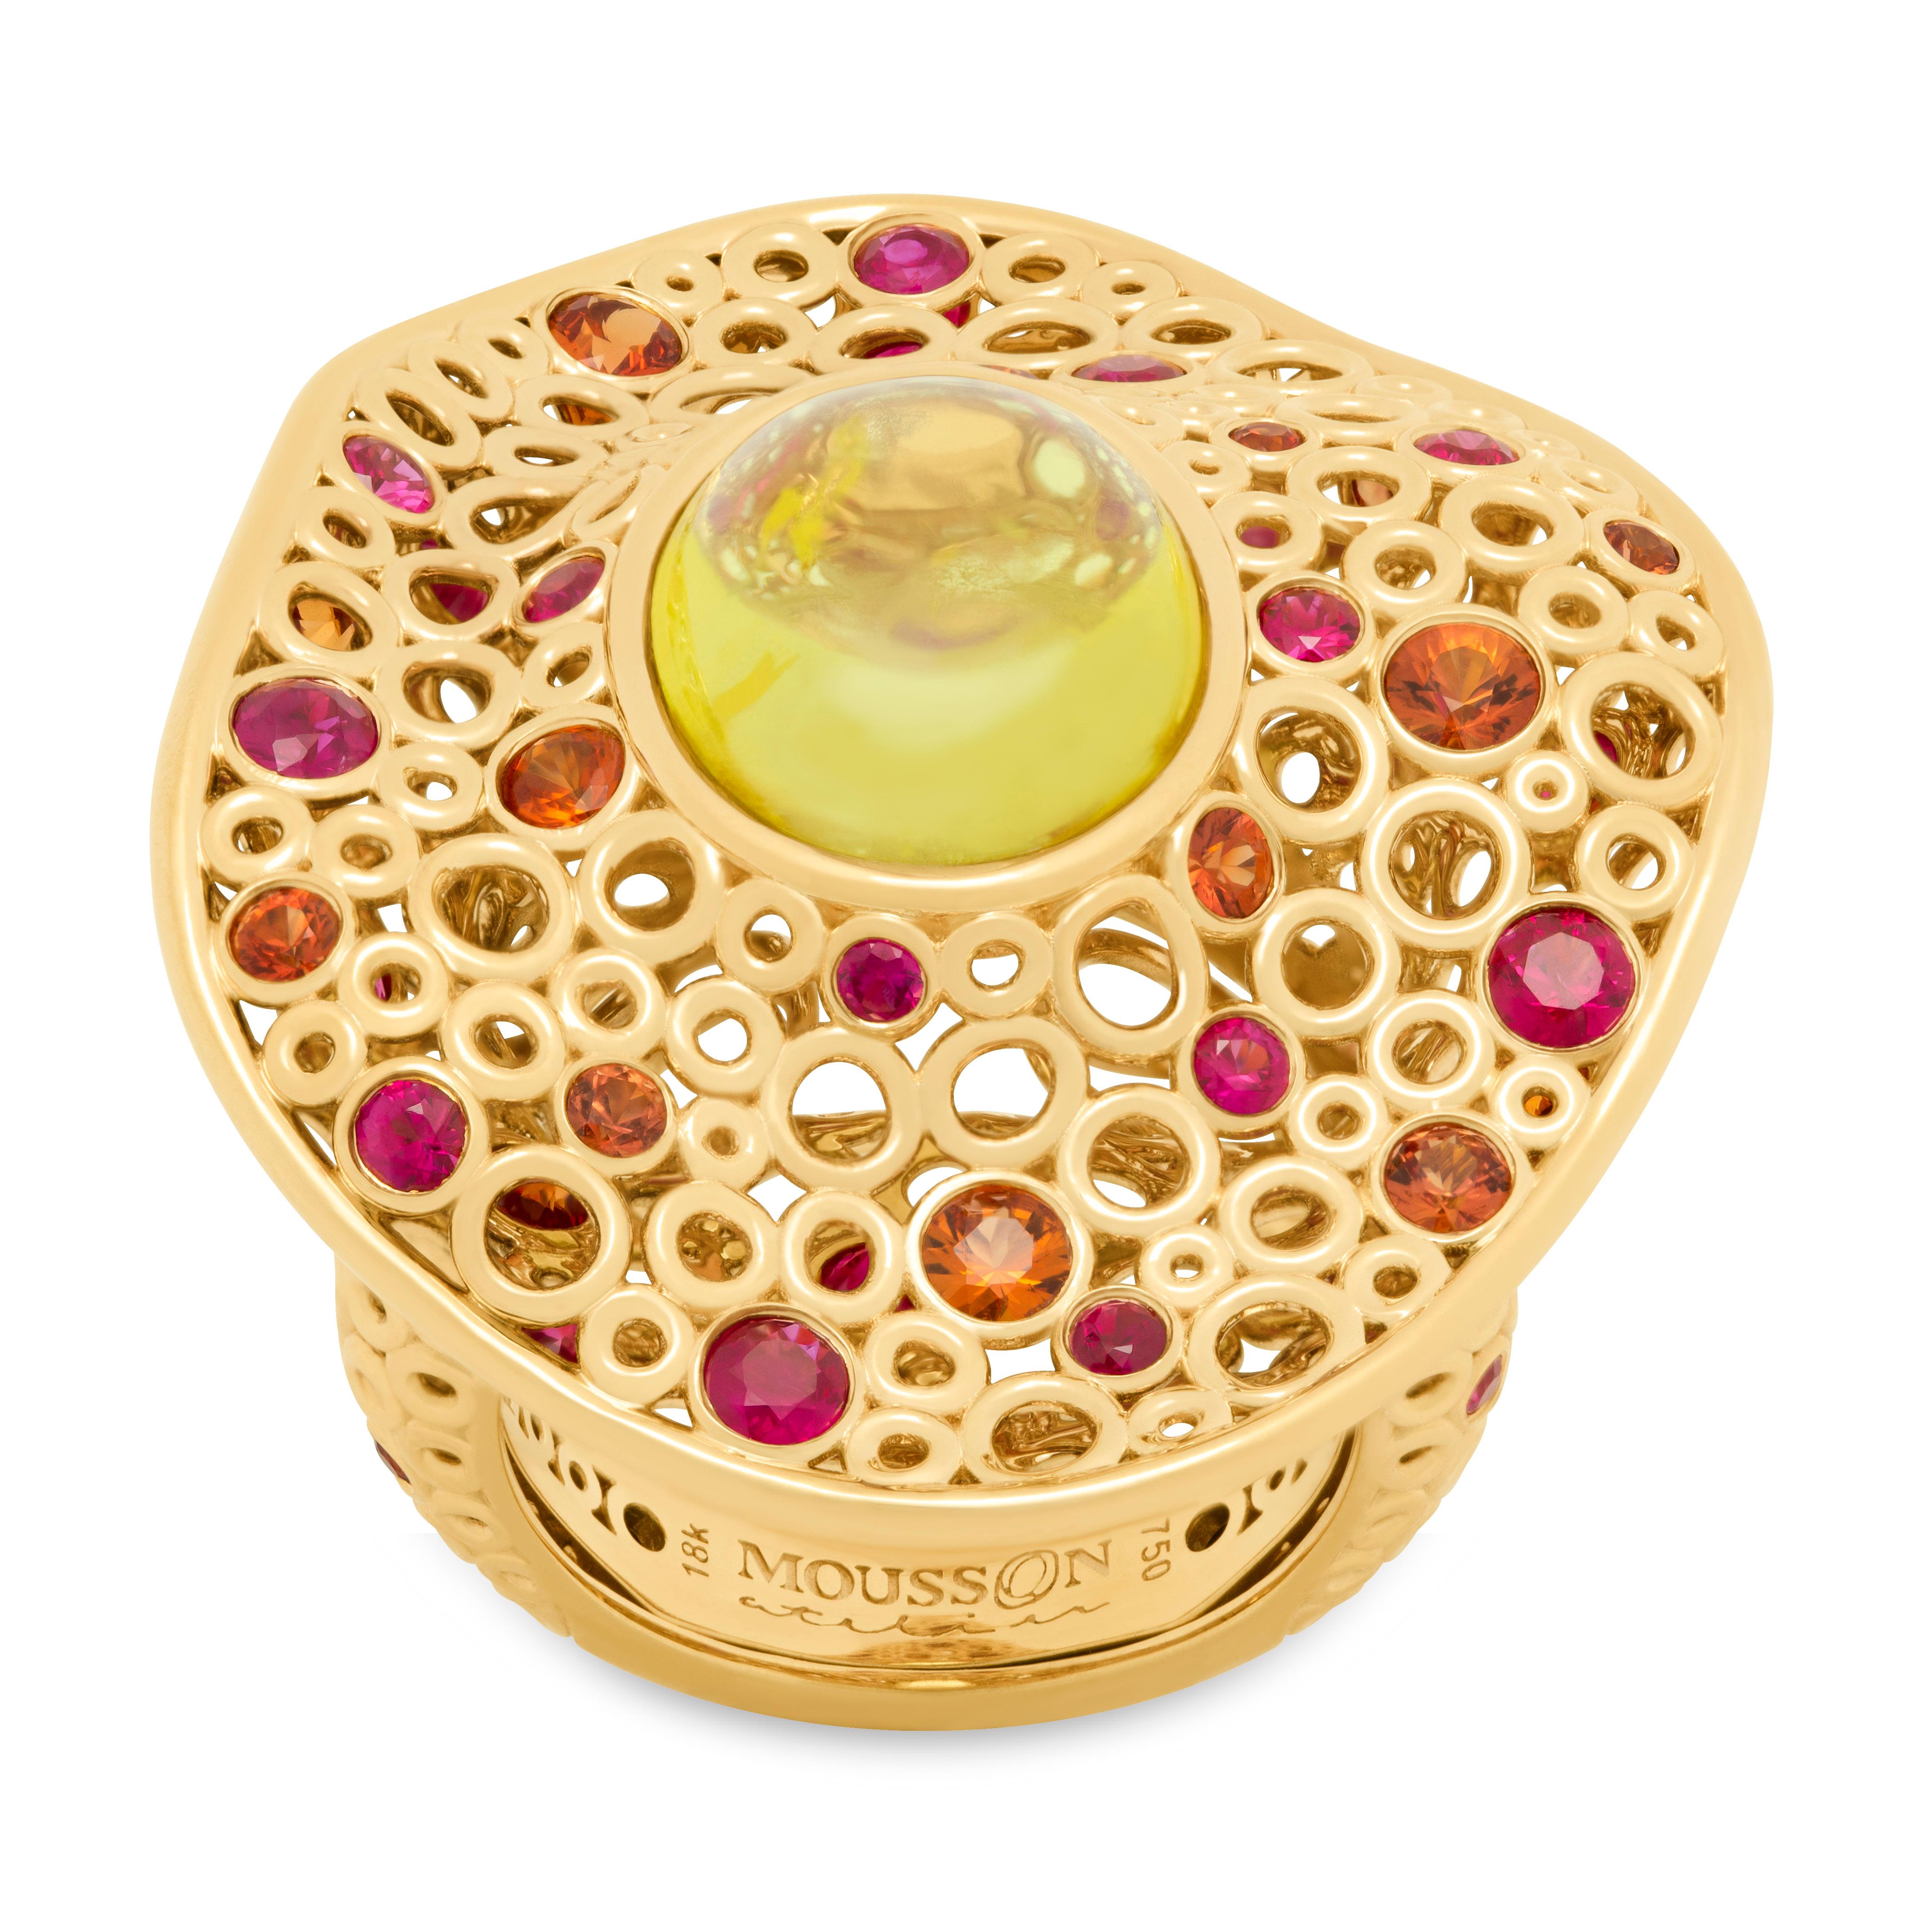 Kanarischer Turmalin 8,13 Karat Rubine Saphire 18 Karat Gelbgold Blasen Ring
Unglaublich leichter und luftiger Ring aus unserer Bubbles Collection. Das 18-karätige Gelbgold wird in Form einer Vielzahl von kleinen Blasen gefertigt, von denen einige